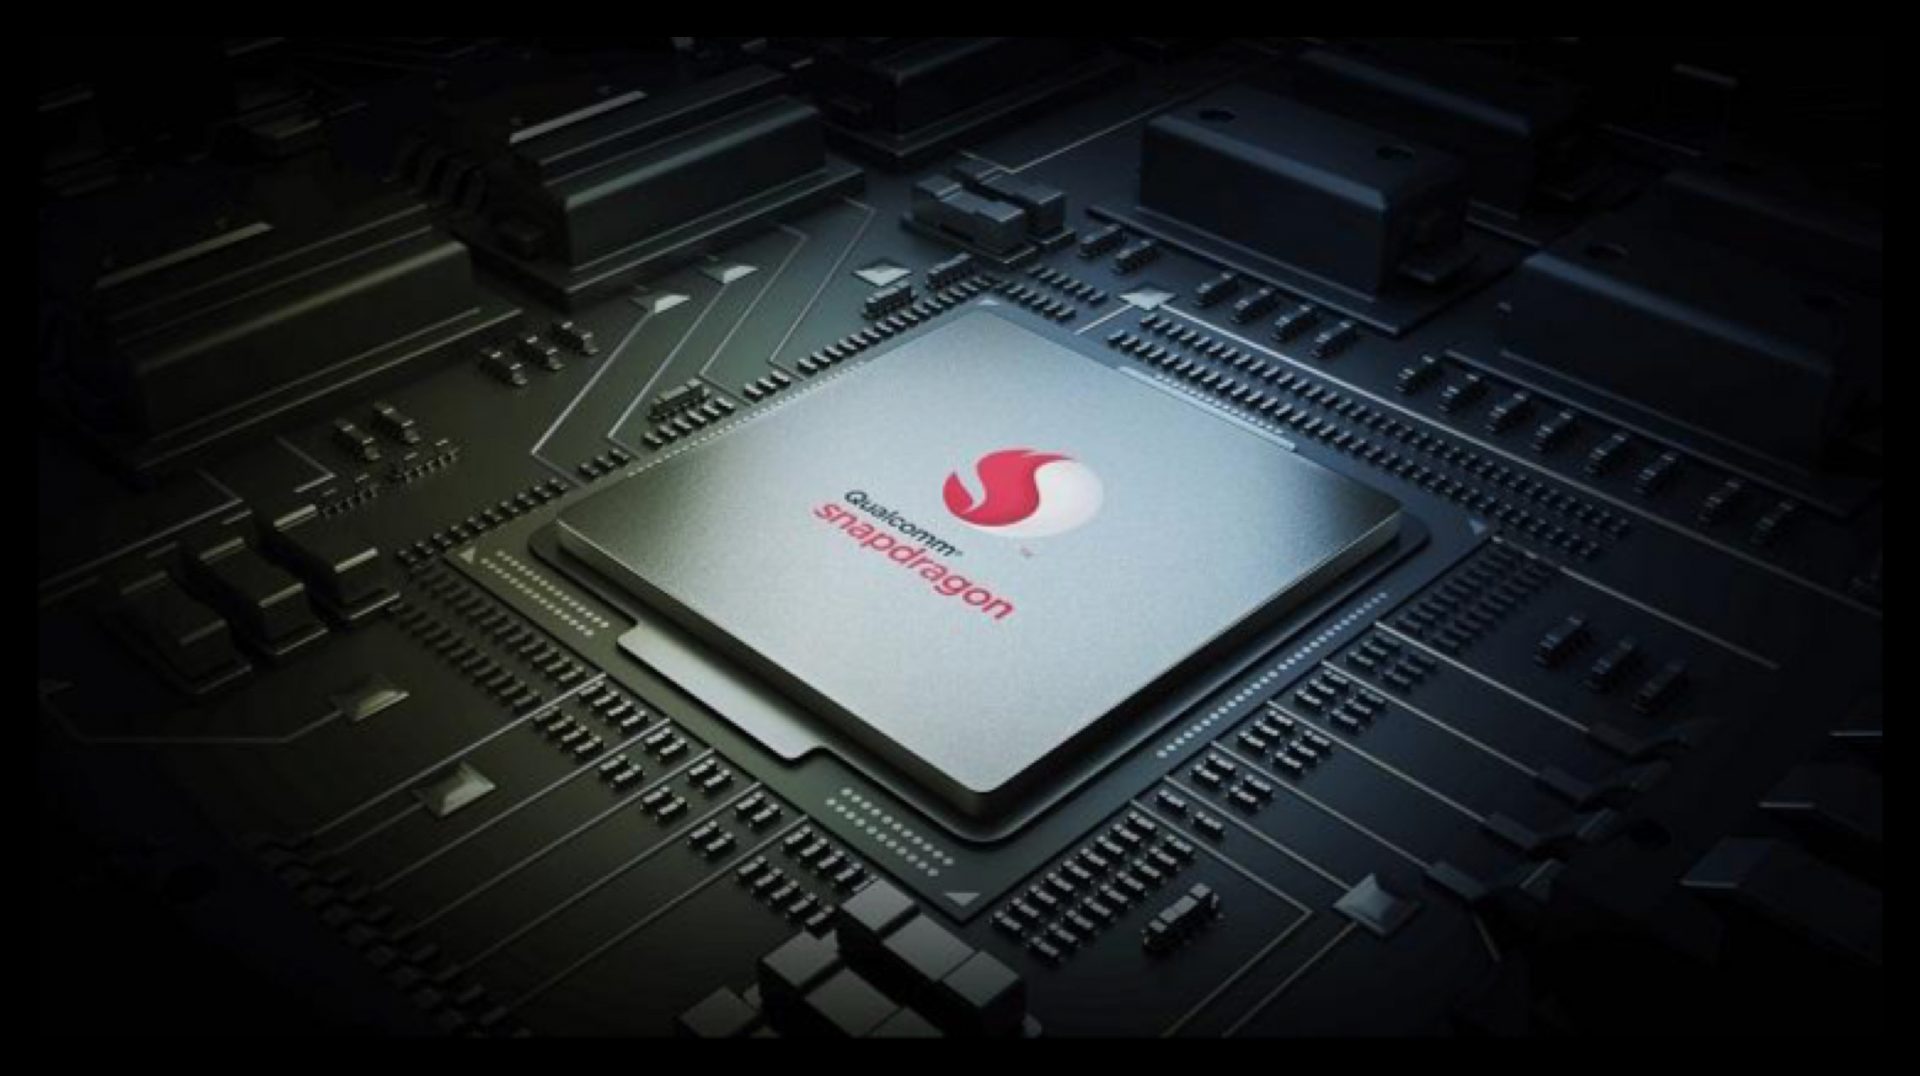 หลุดสเปคชิปเซ็ต Snapdragon 735 รุ่นใหม่สำหรับสมาร์ตโฟนระดับกลาง : 7 นาโนเมตร, 8 คอร์, รองรับ 5G